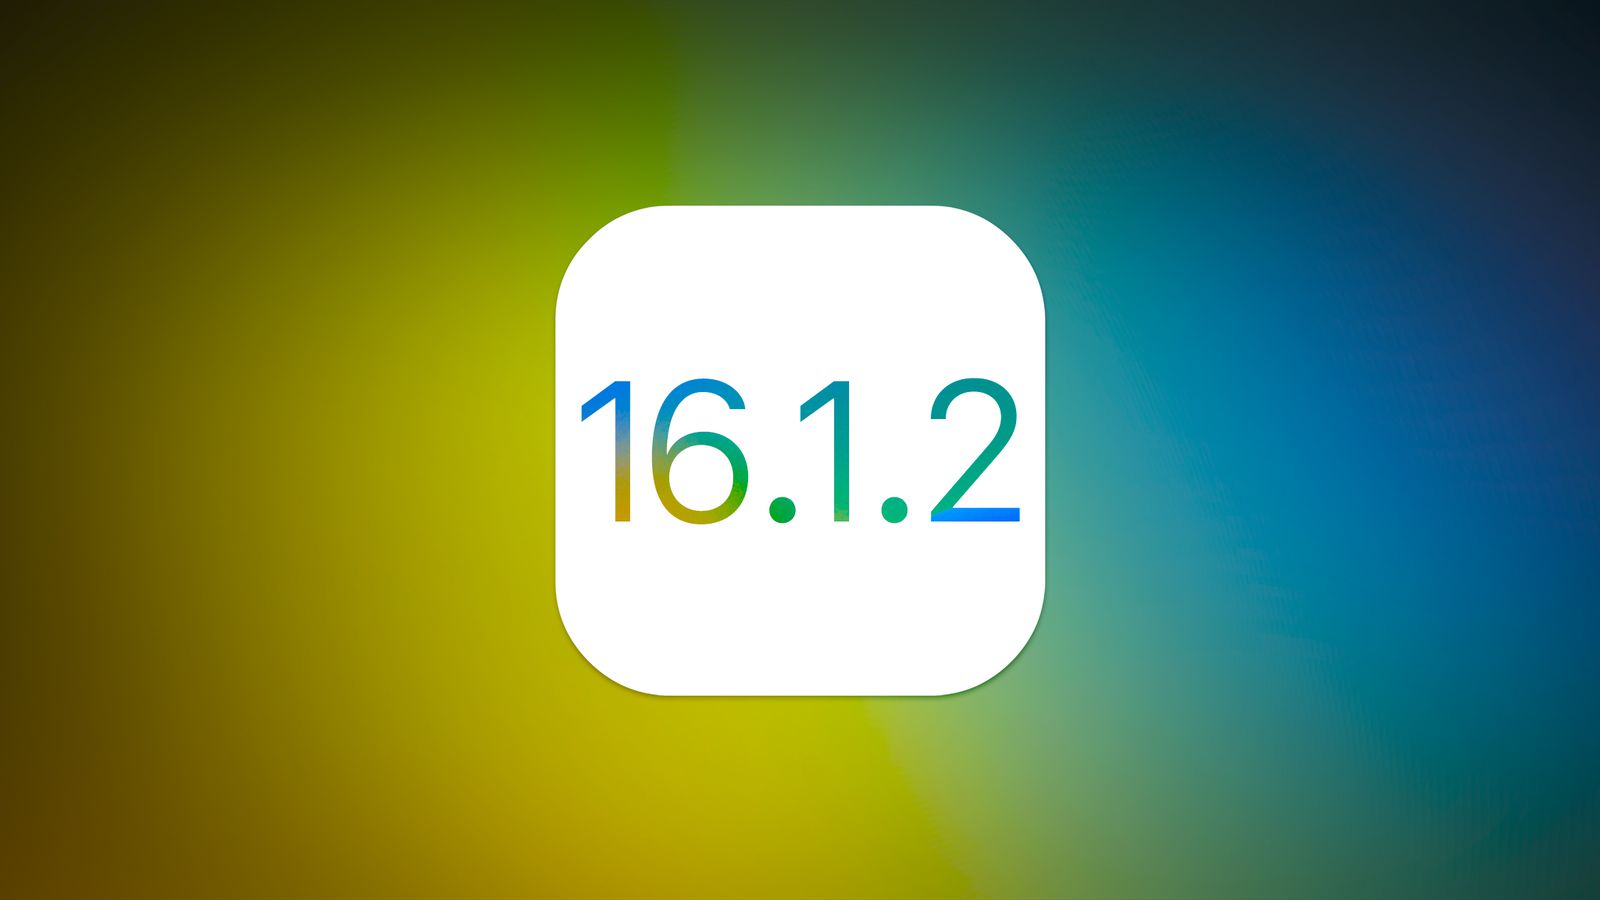 Apple прекратила подписывать iOS 16.1.2